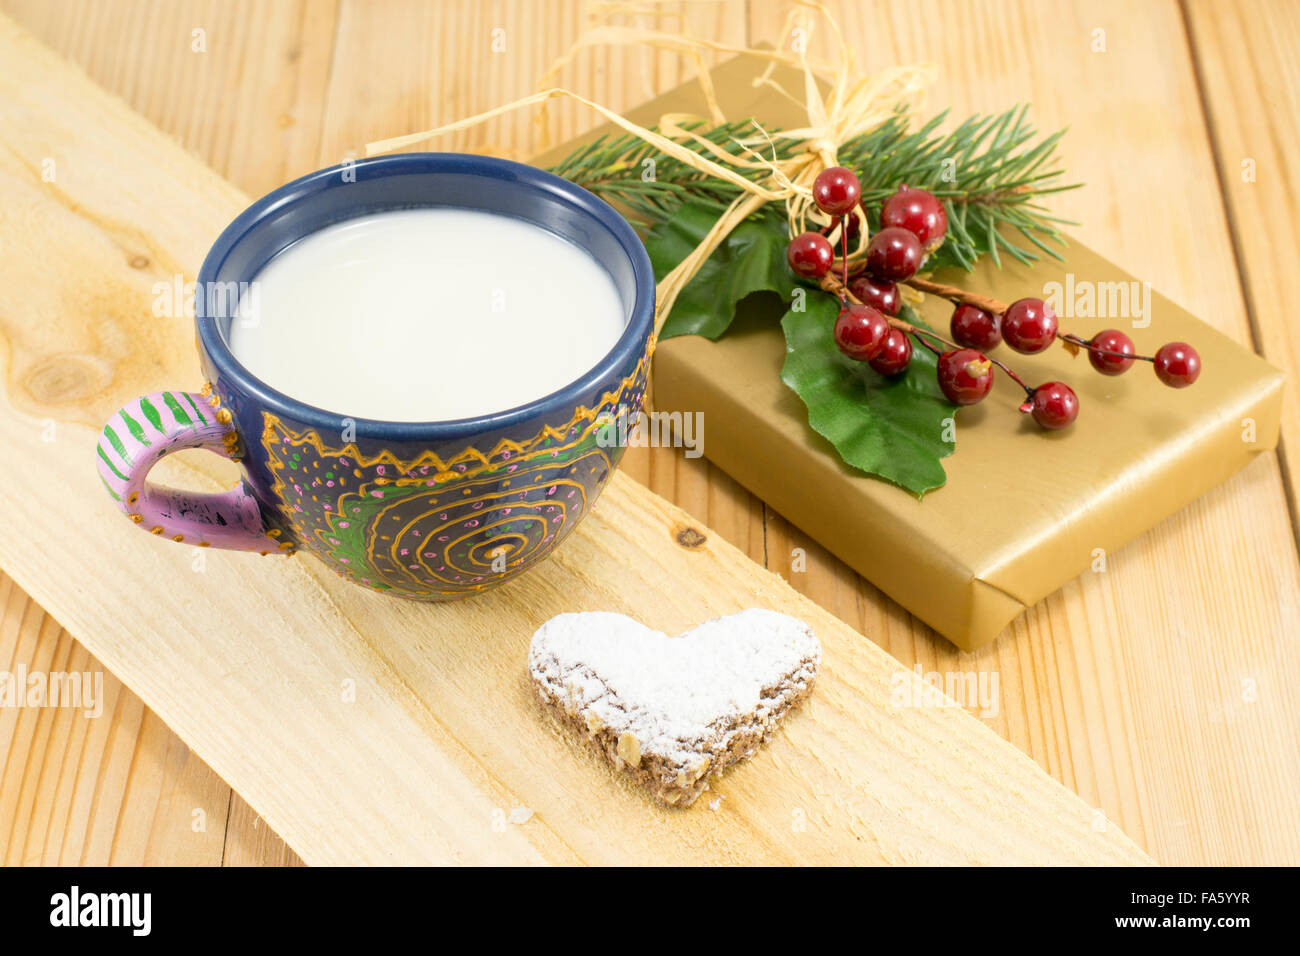 Décoration de Noël pour petit déjeuner joyeux sur fond de bois. Lait et biscuits Banque D'Images